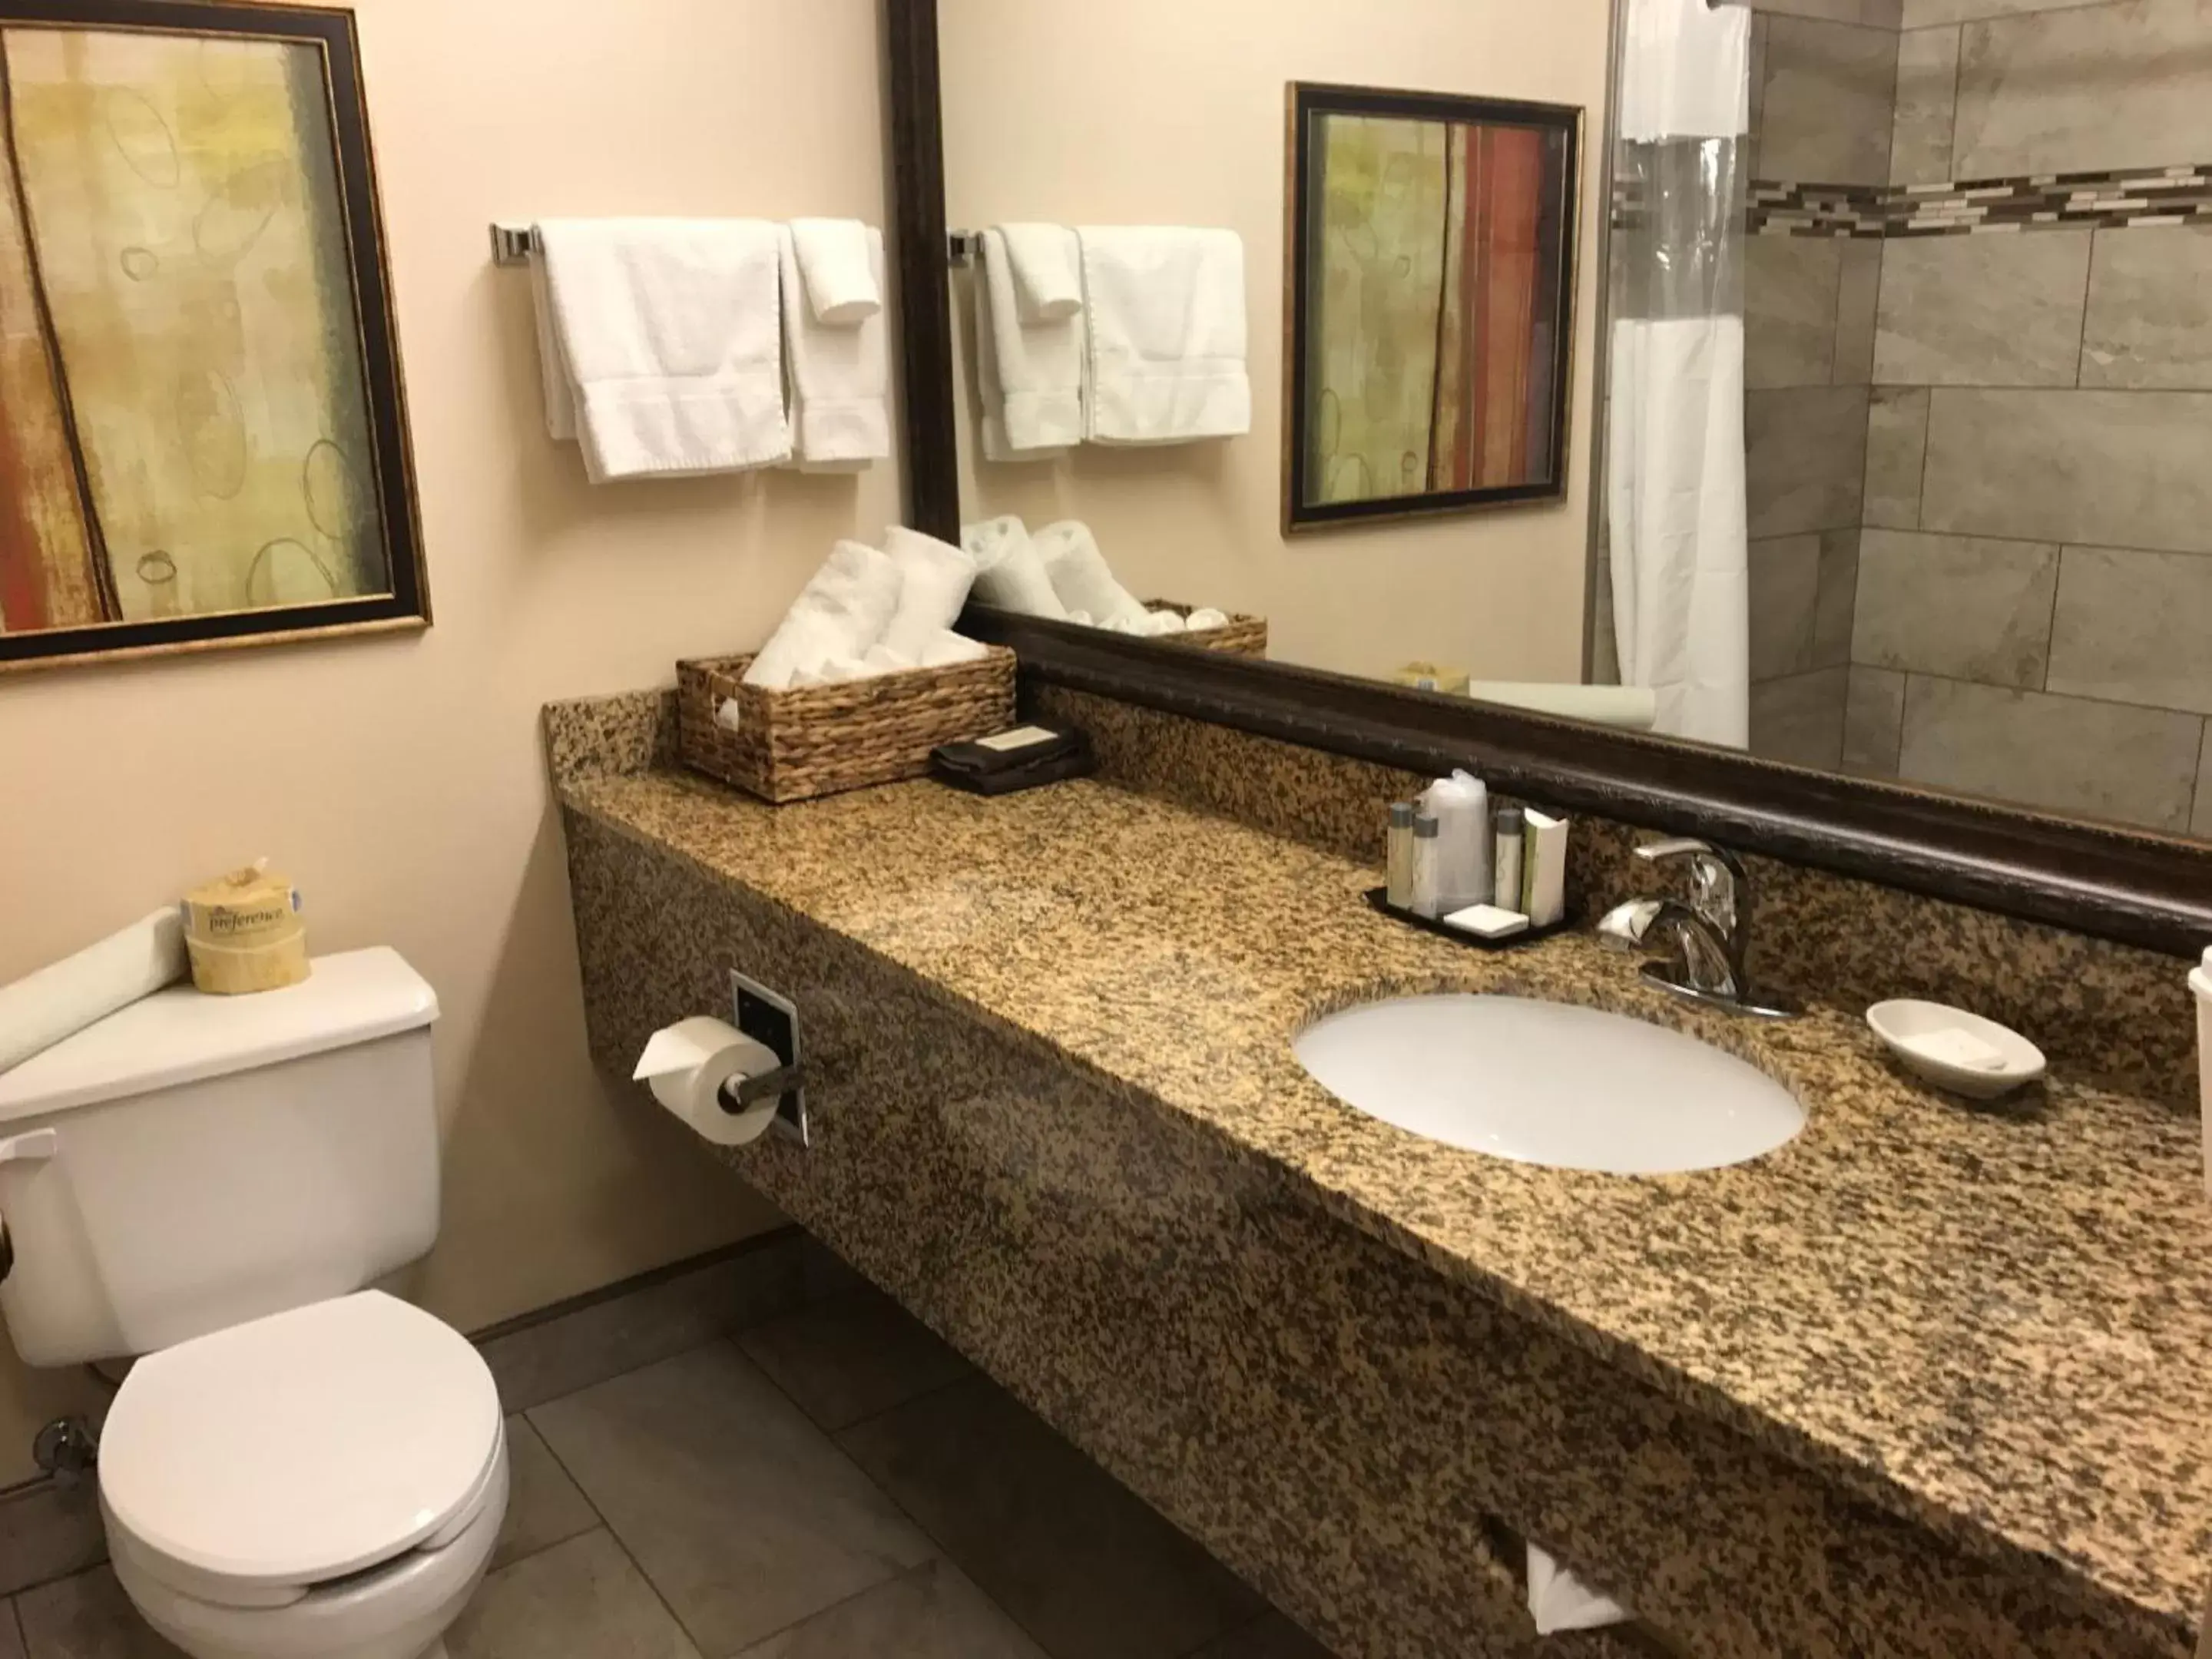 Bathroom in Expressway Suites of Bismarck